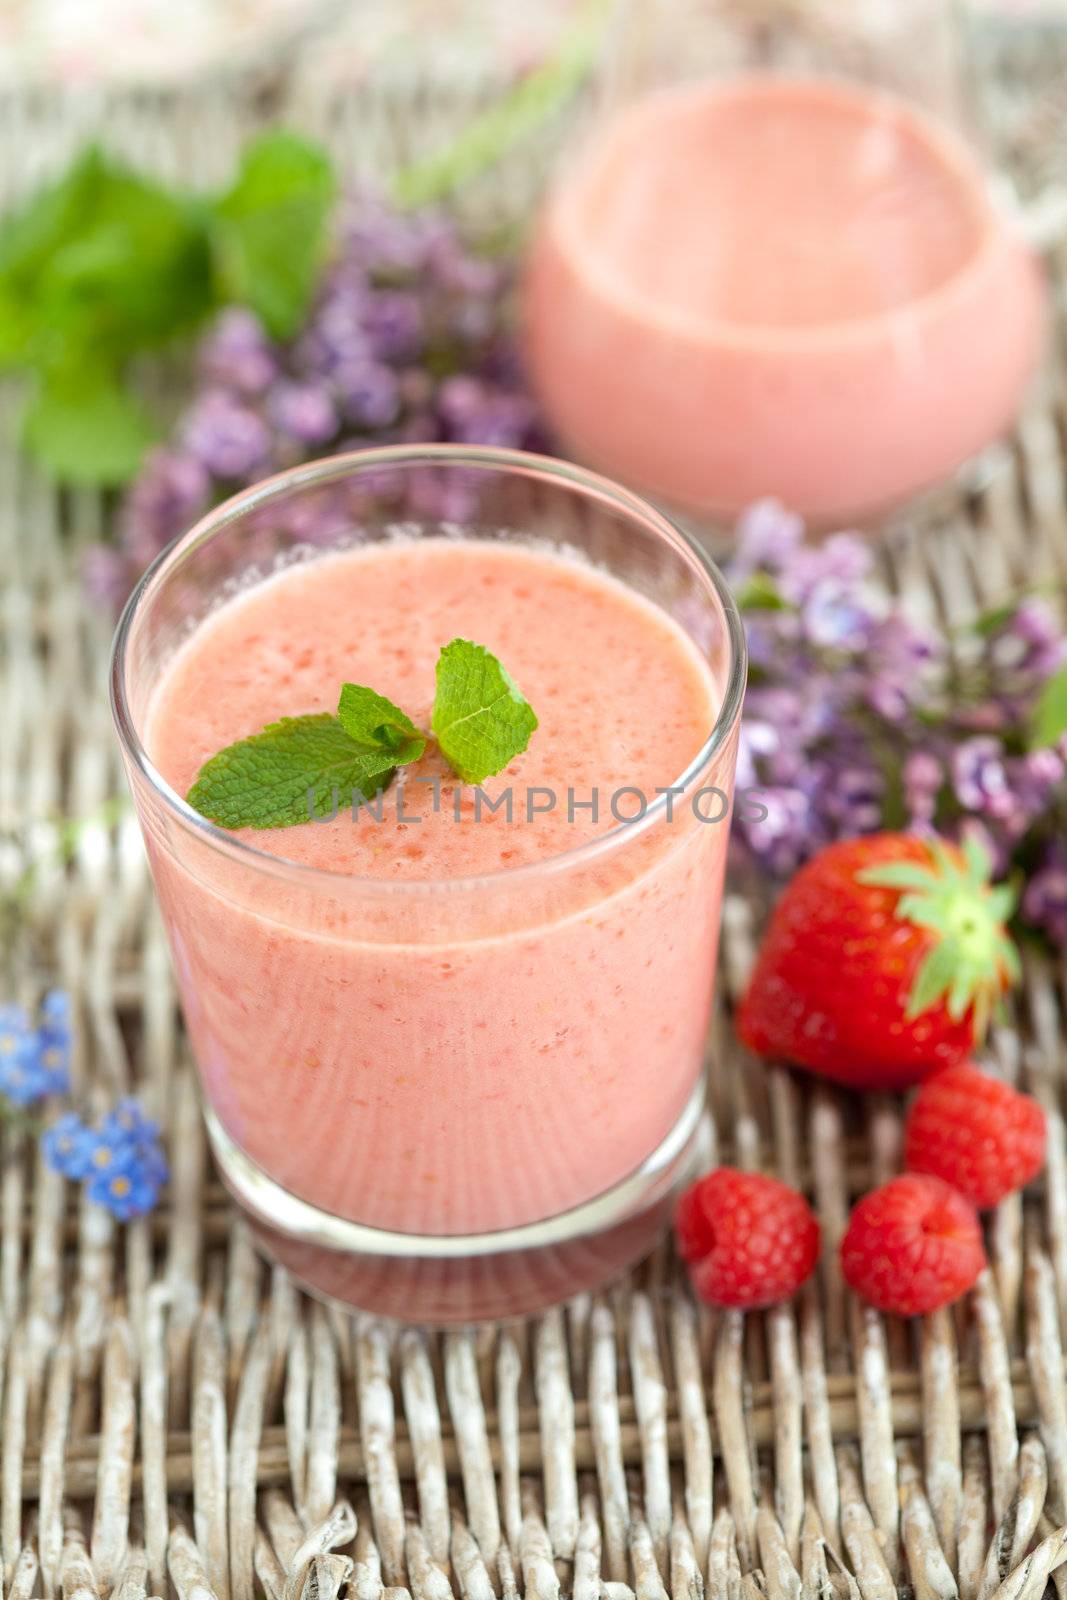 Raspberry strawberry smoothie by Fotosmurf